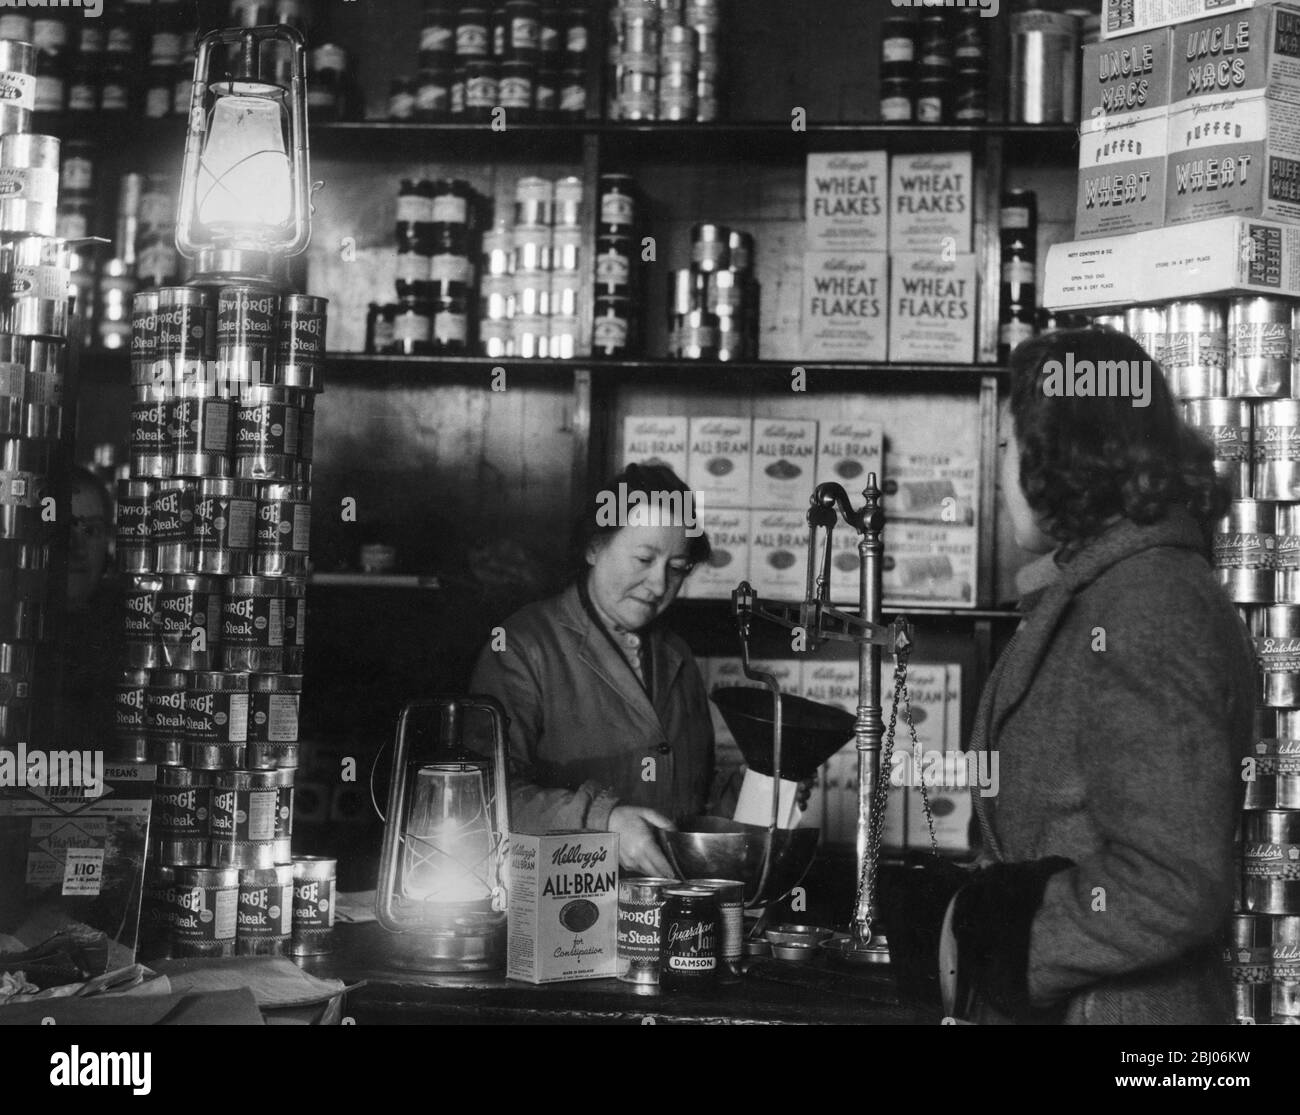 Crisis del combustible de 1947: - oficinas y tiendas de Londres, cuando las luces se apagaron como resultado de los cortes de electricidad, continuó con diferentes tipos de iluminación. Las fotos muestran las compras a la luz de las lámparas de los huracanes en una tienda de ultramarinos en Blackfriars, Londres. E.C. el 10 de febrero de 1947. - Foto de stock